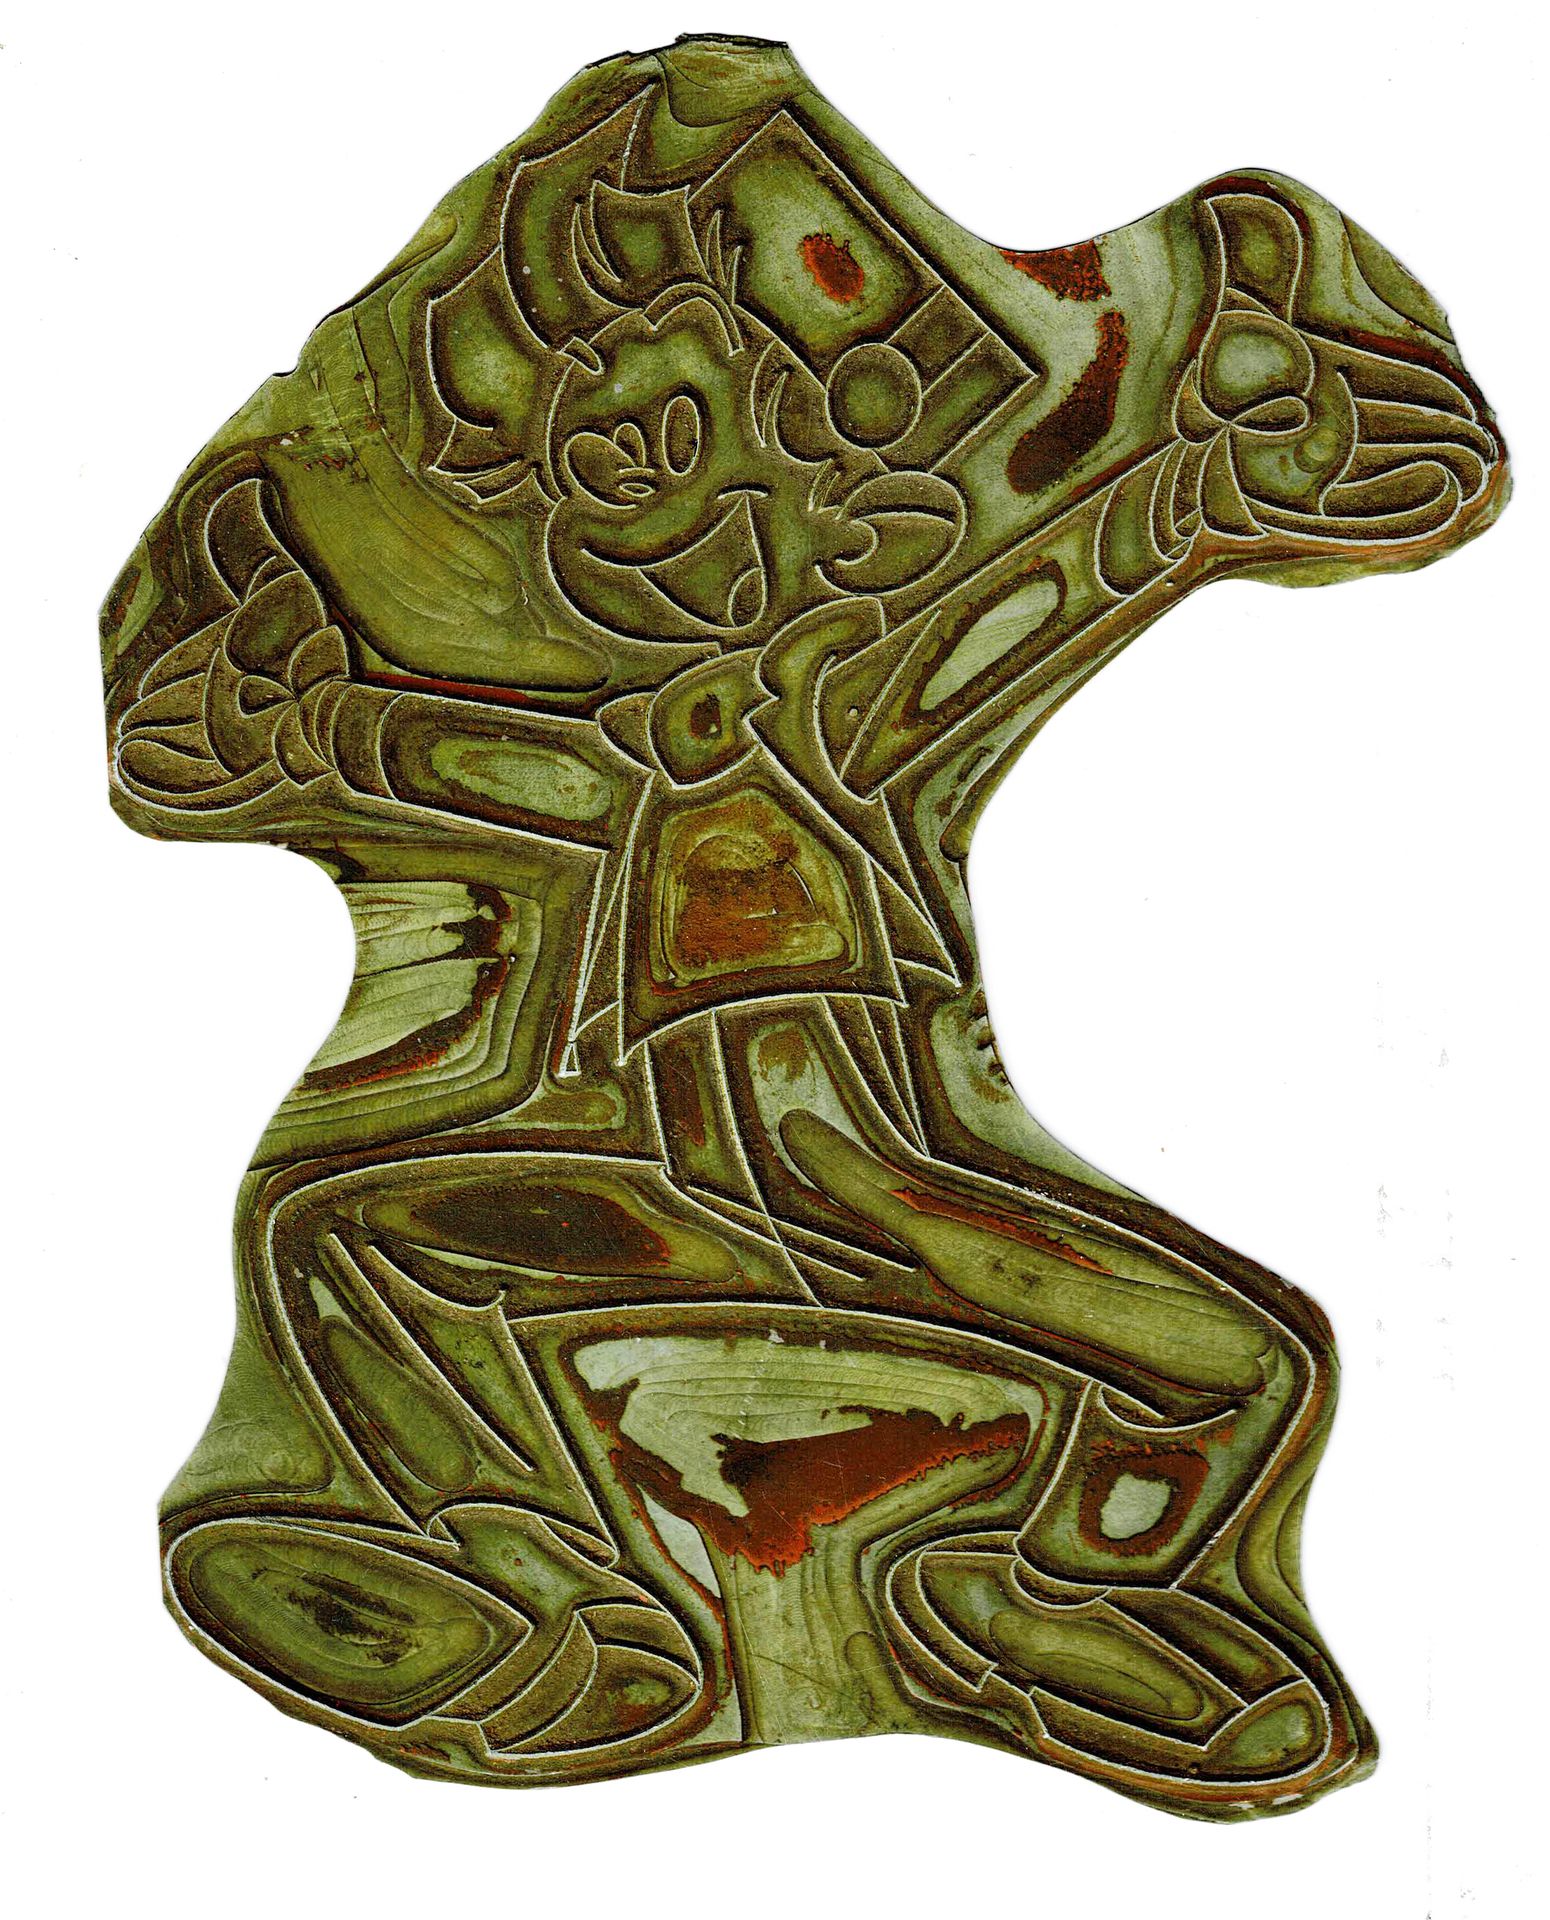 André FRANQUIN 
Plancha de impresión de Spirou Plage, años 60, 22 cm.